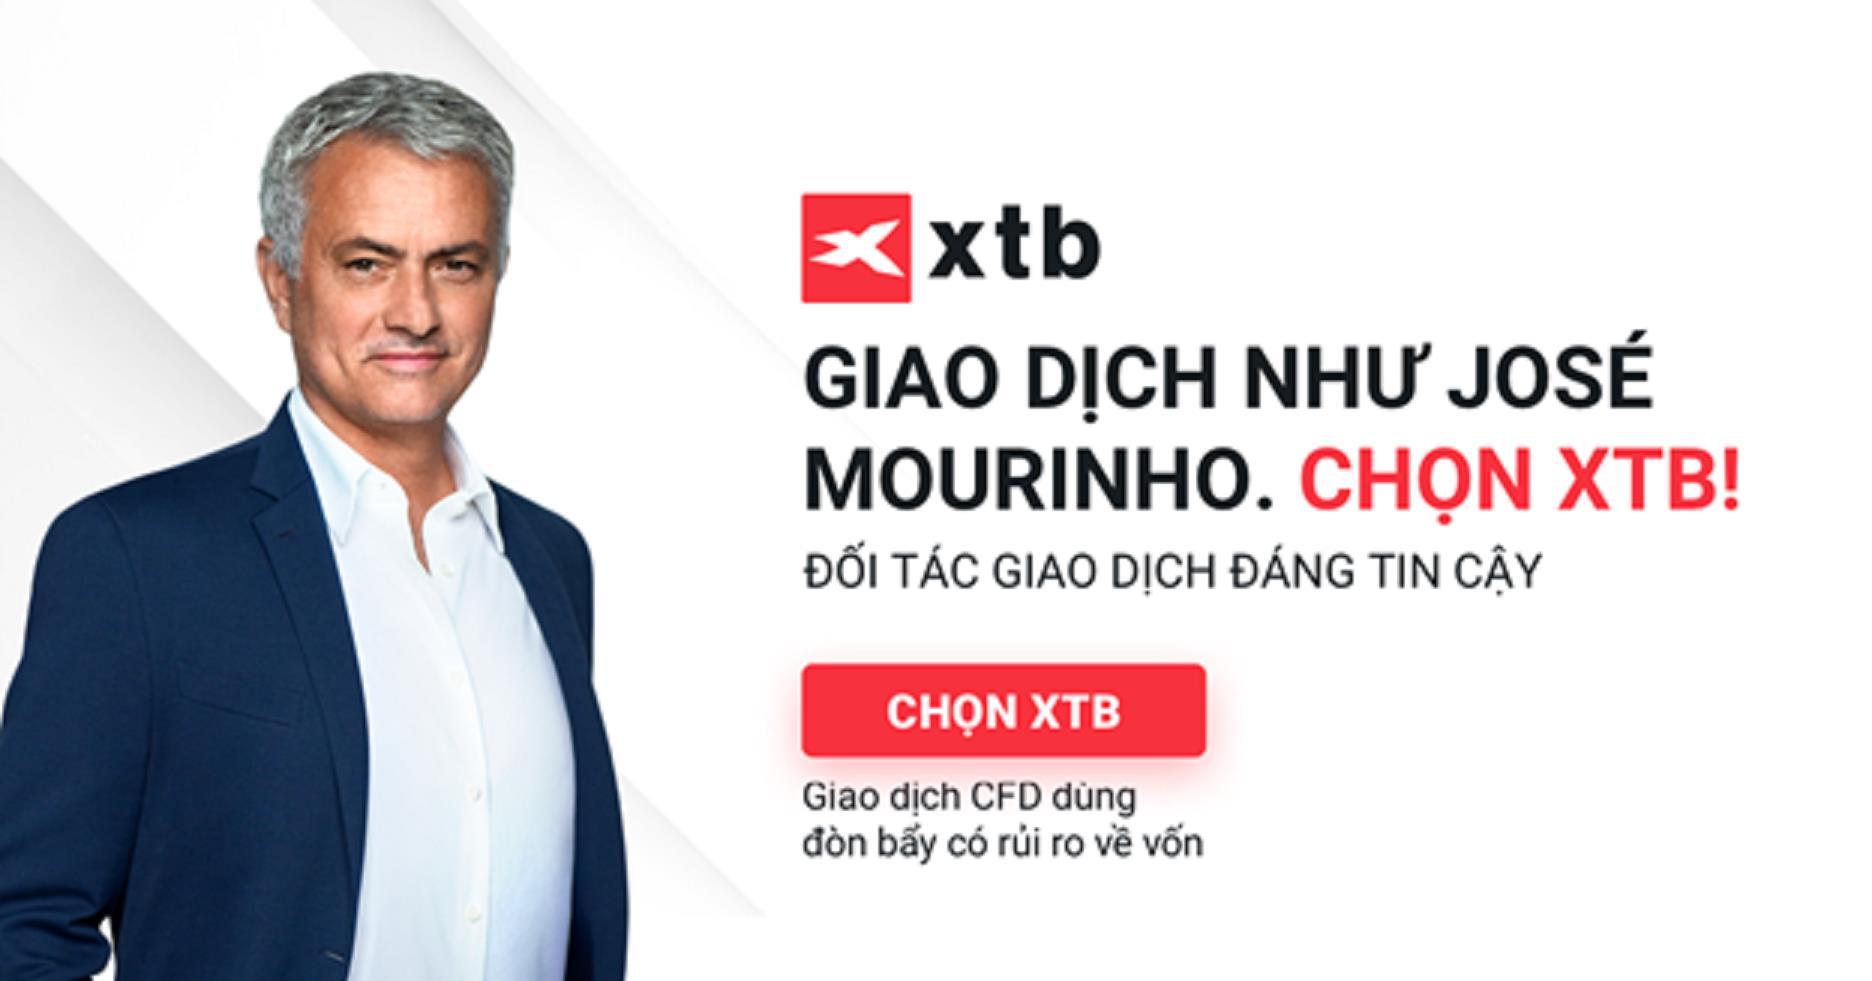 Phỏng vấn Omar Arnaout, CEO XTB về việc José Mourinho trở thành đại sứ toàn cầu của XTB